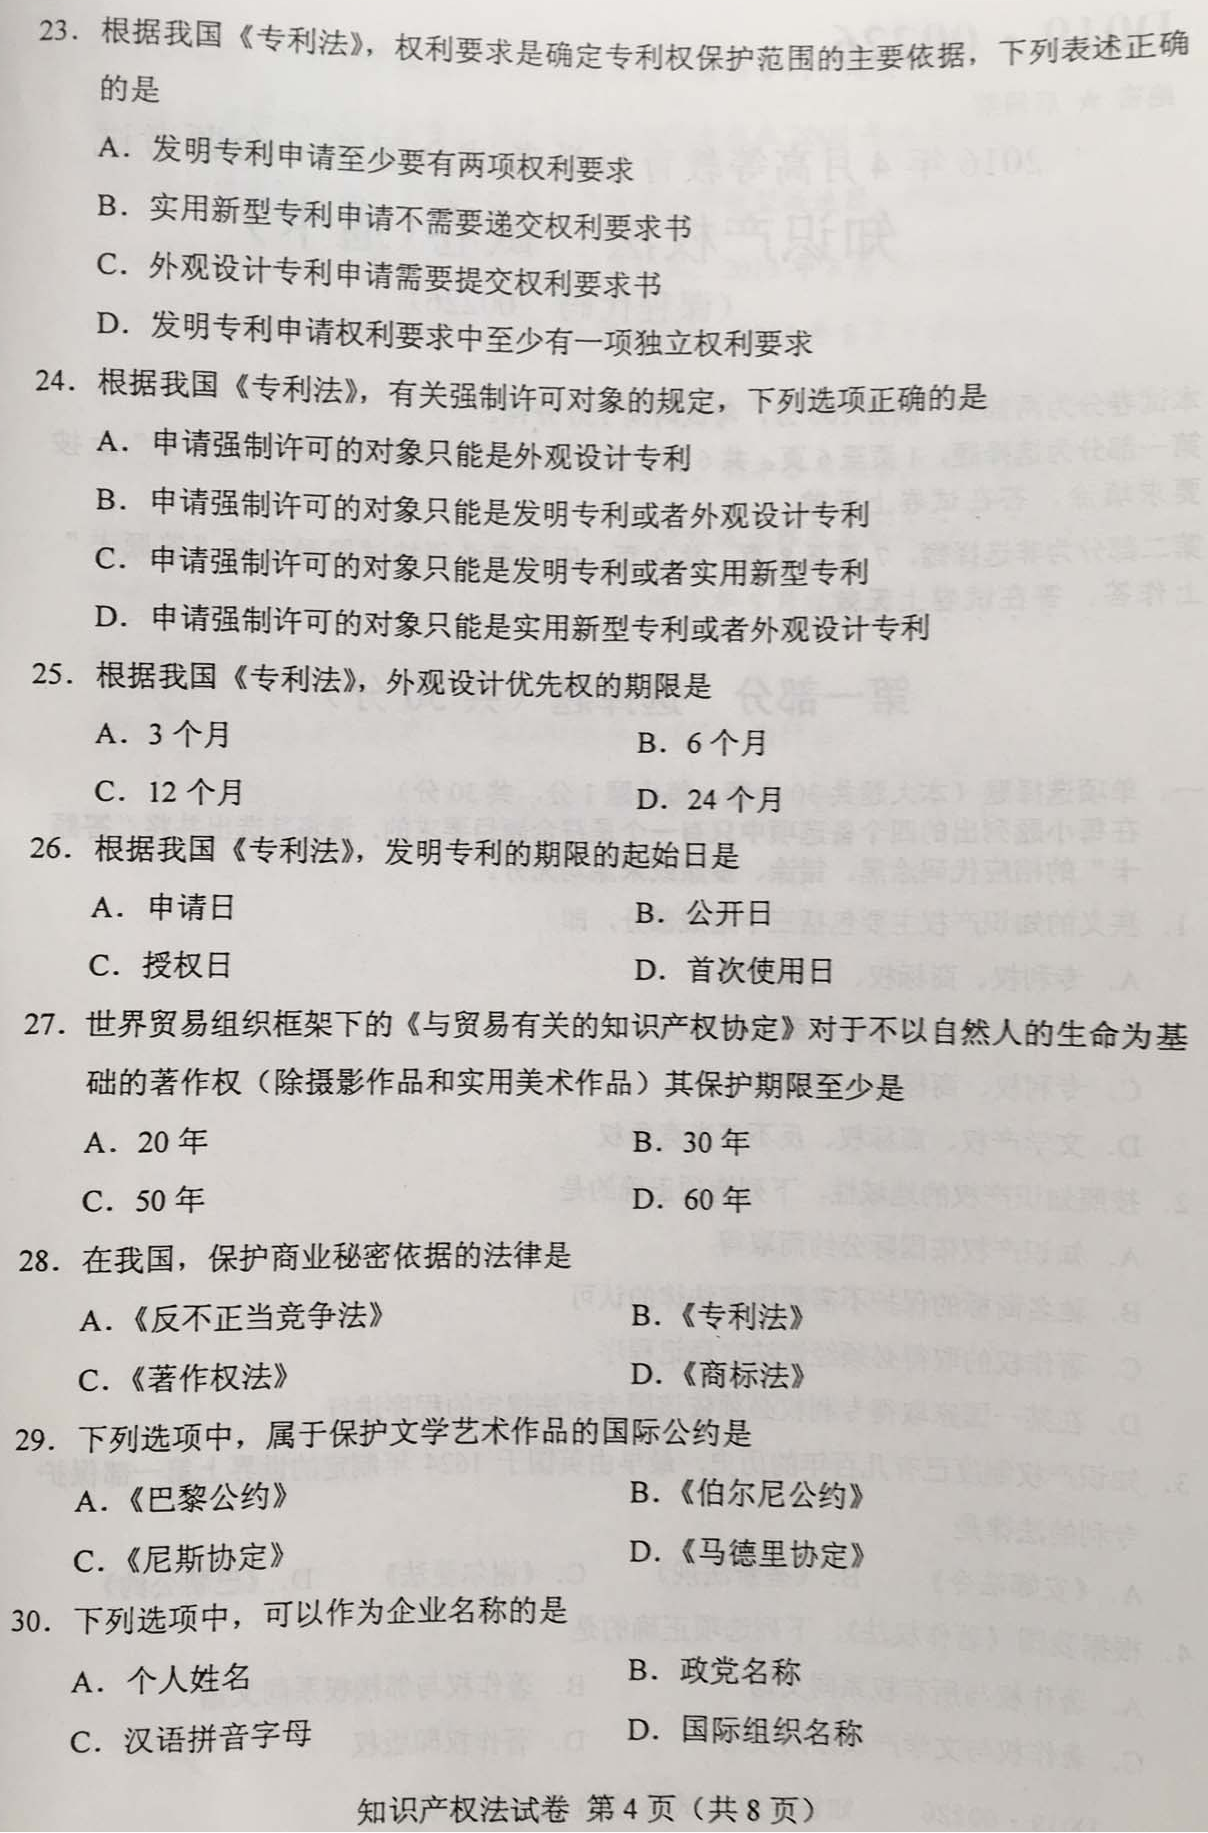 贵州省2016年04月自学考试知识产权法试题和答案